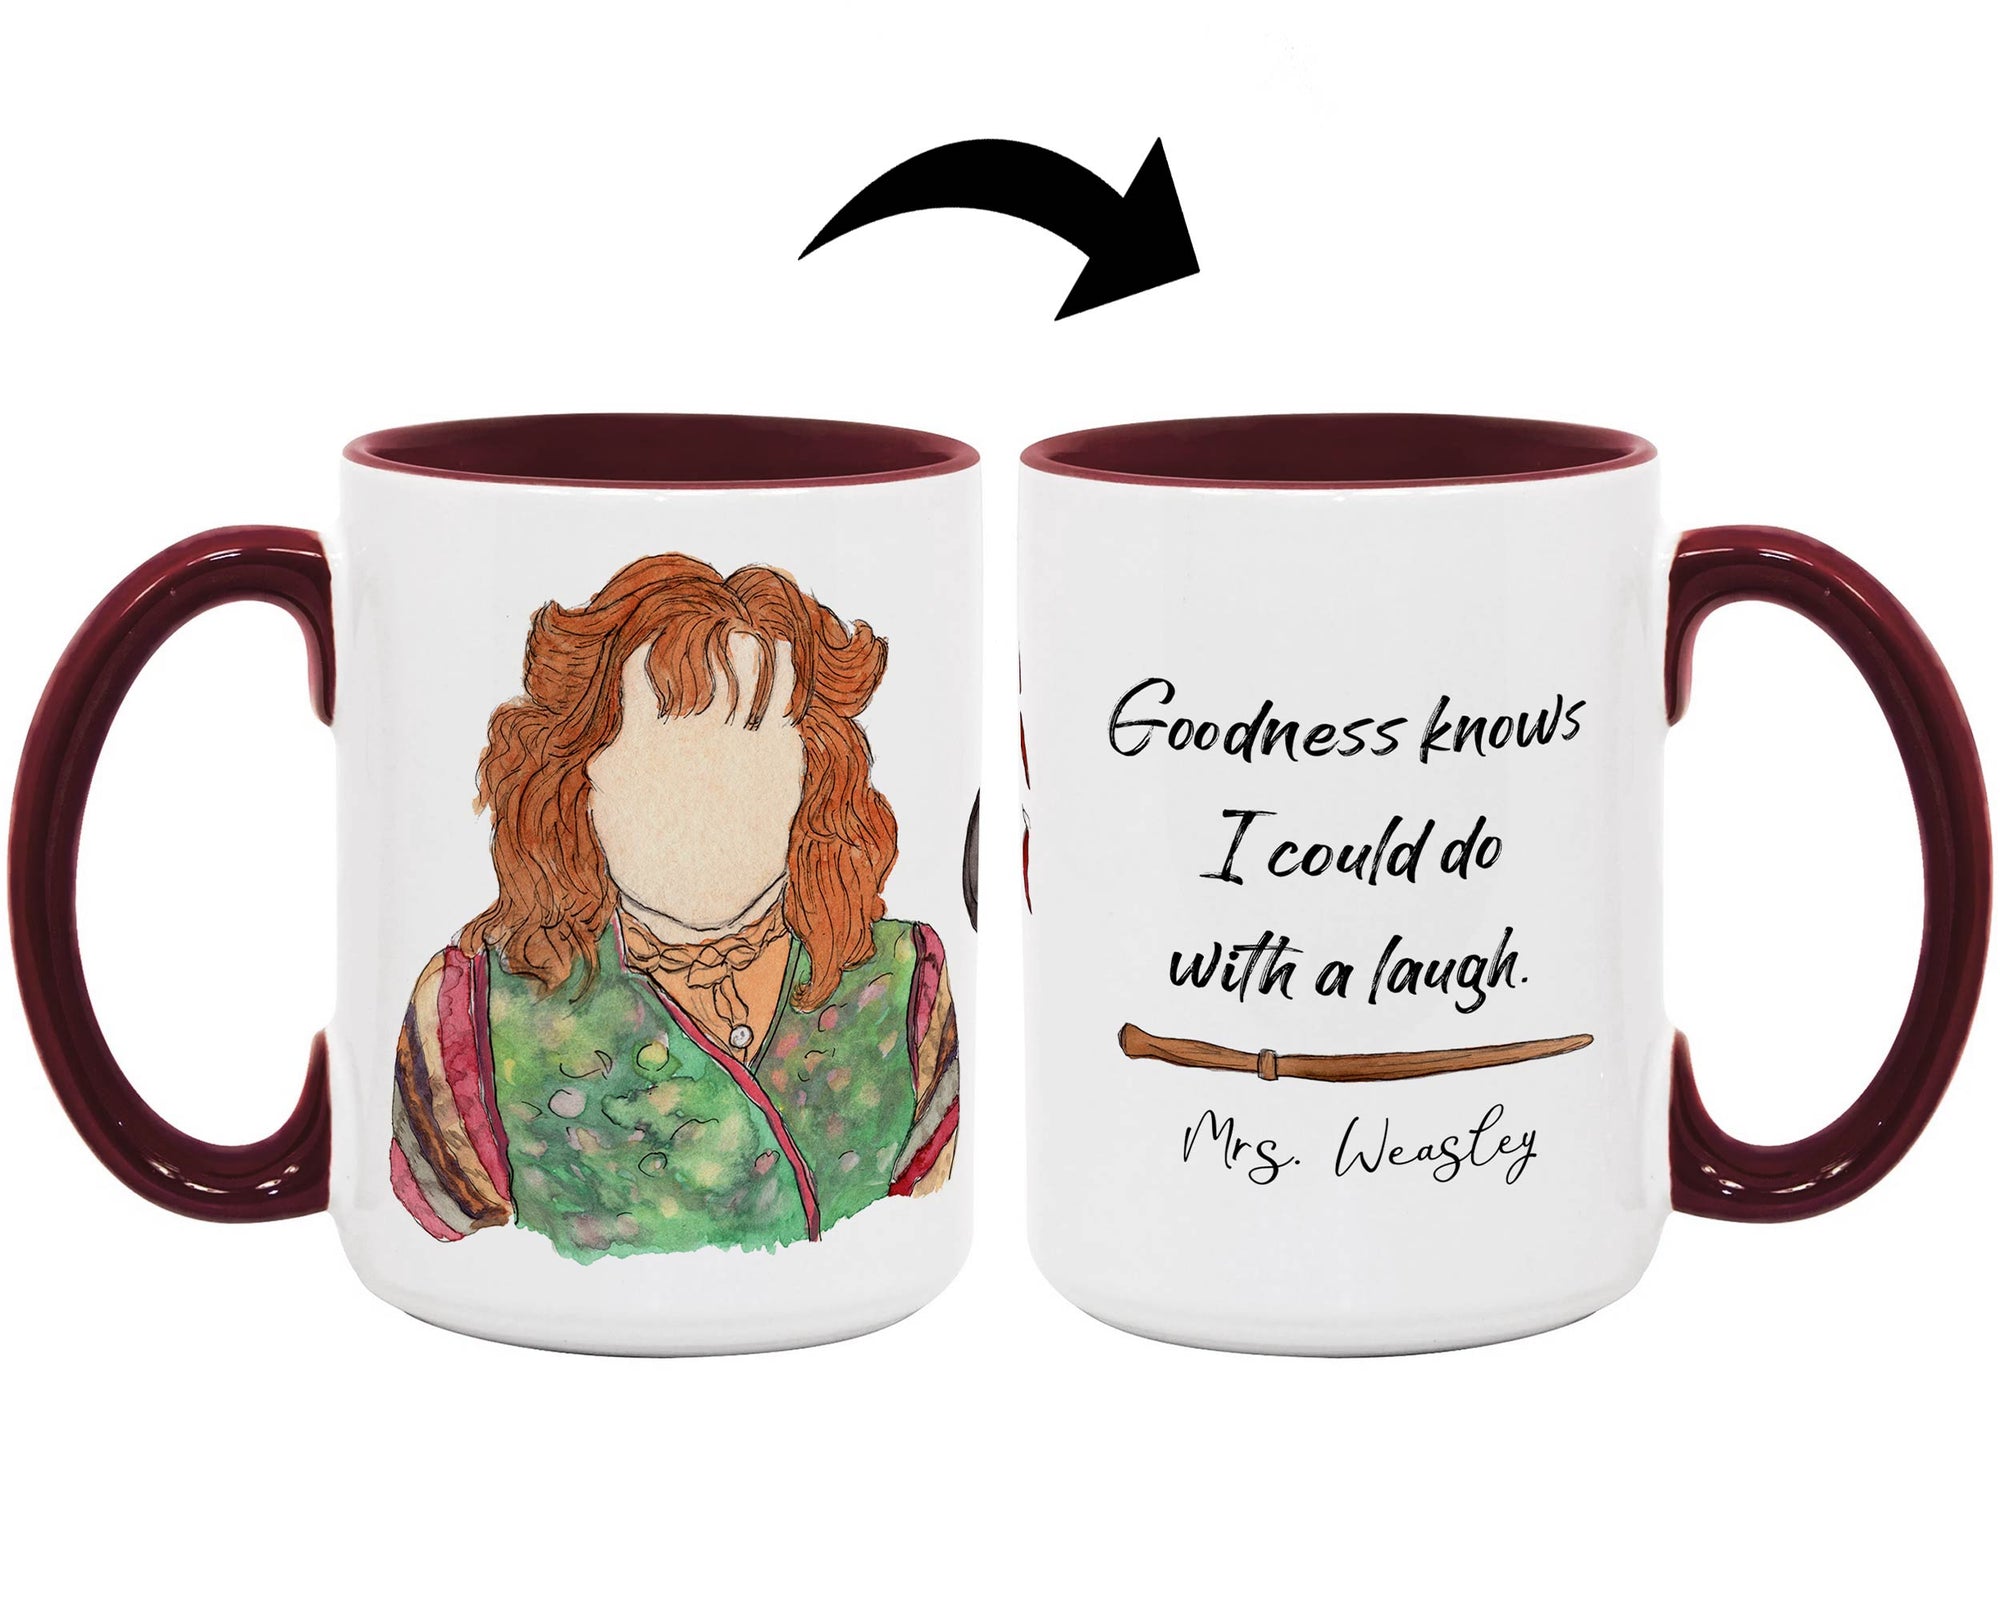 Mrs. Weasley Coffee Mug